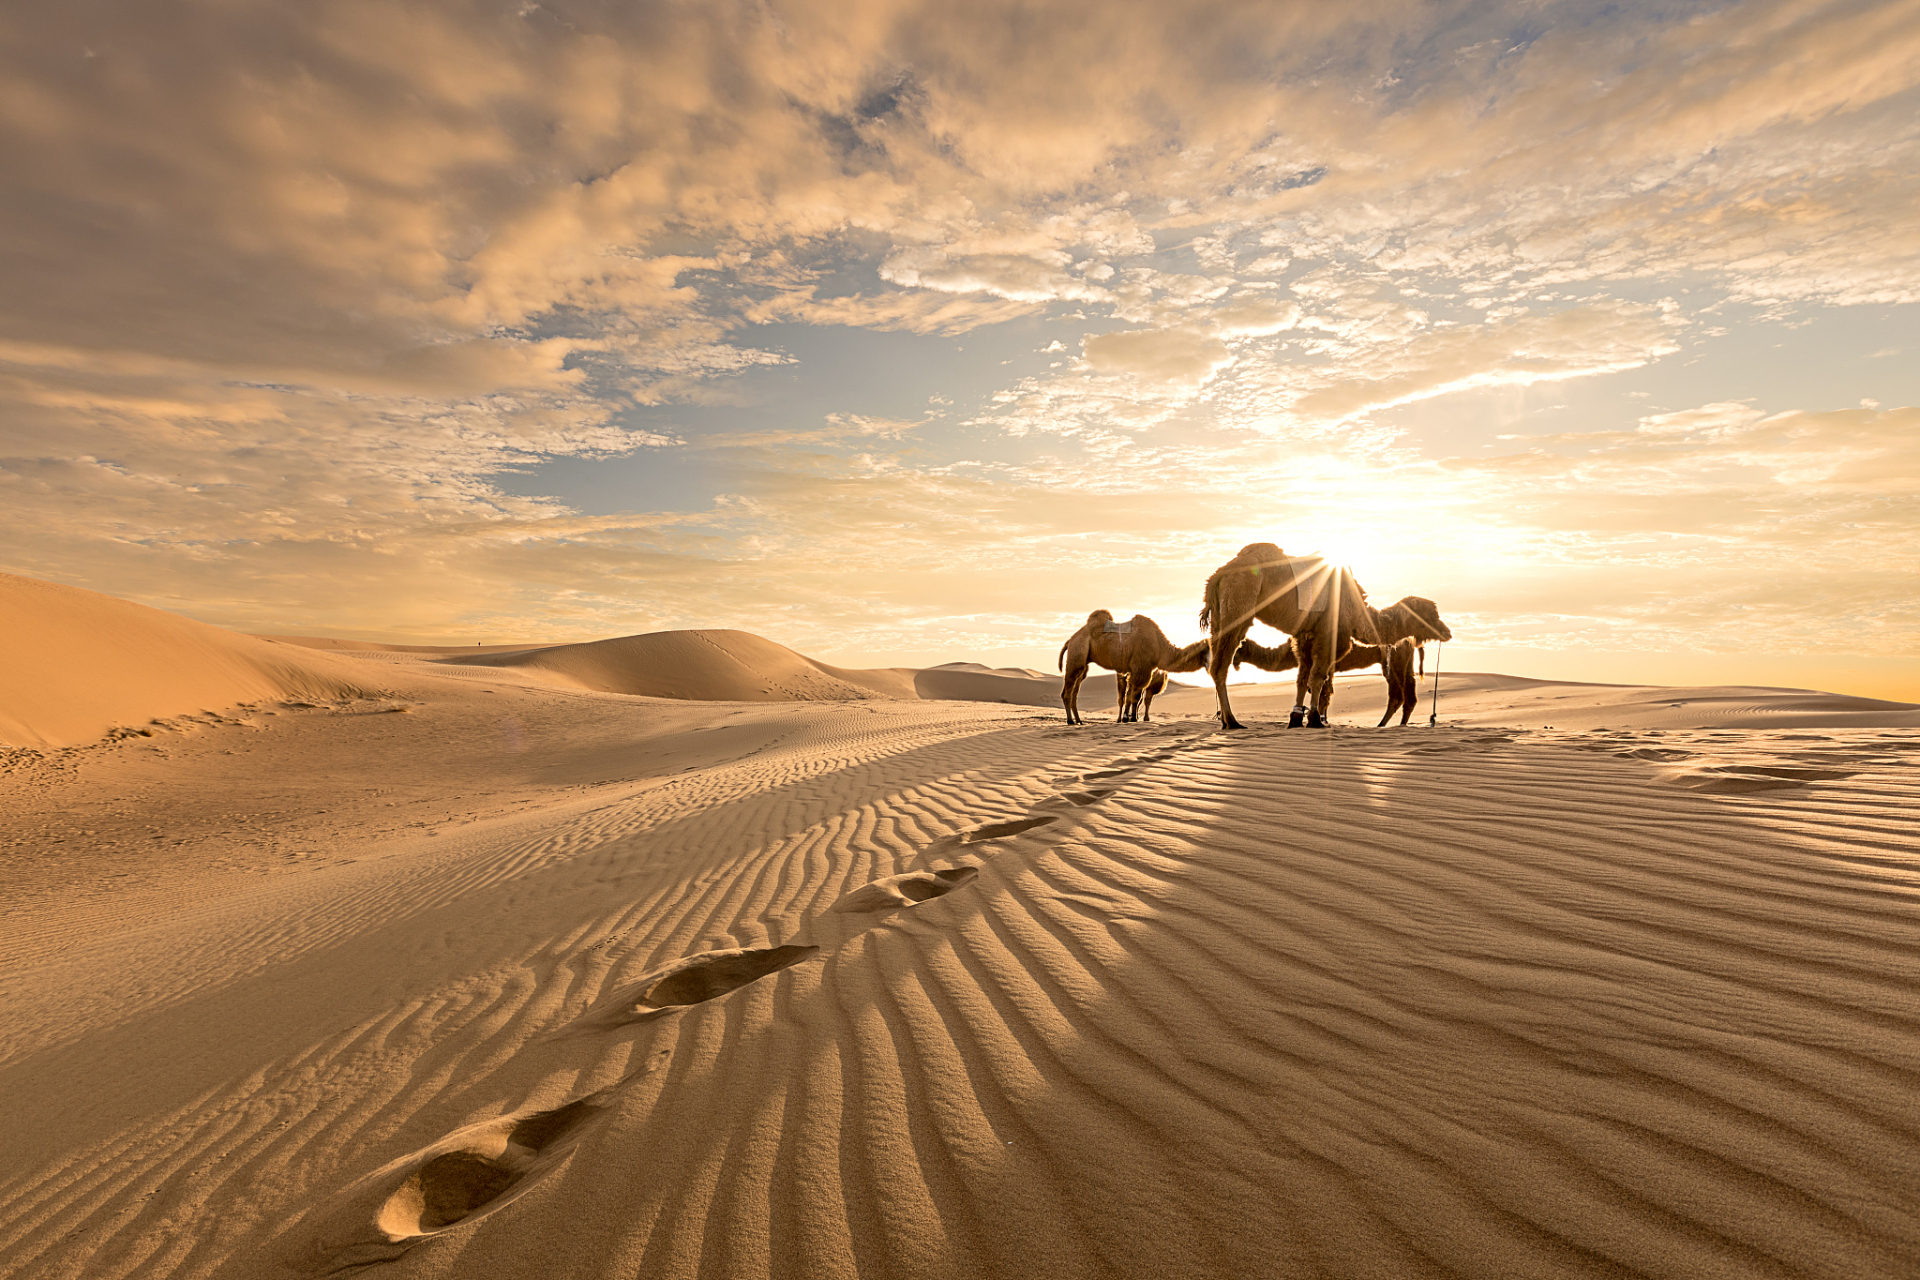 11566 沙漠骆驼是一种生活在干旱地区的双峰骆驼,通常在沙漠,荒漠